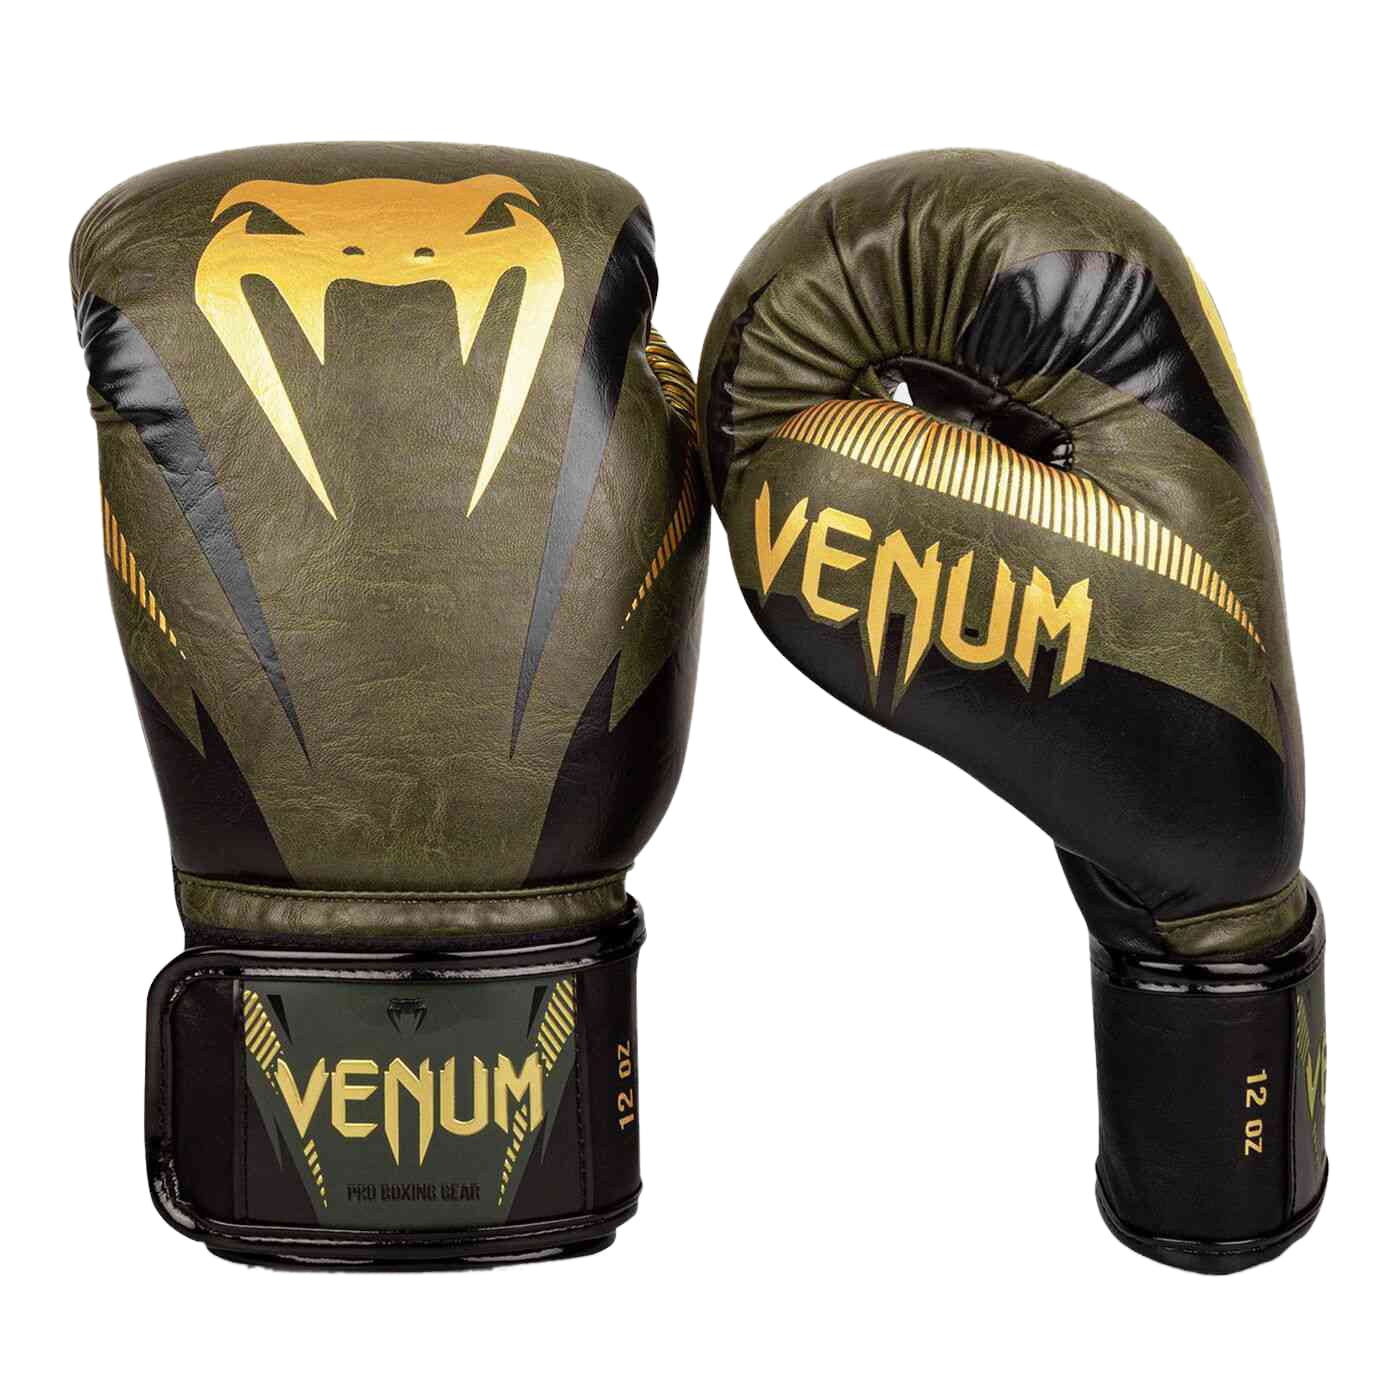 Venum 14 Oz Impact Boxing Gloves, Kaki/Gold